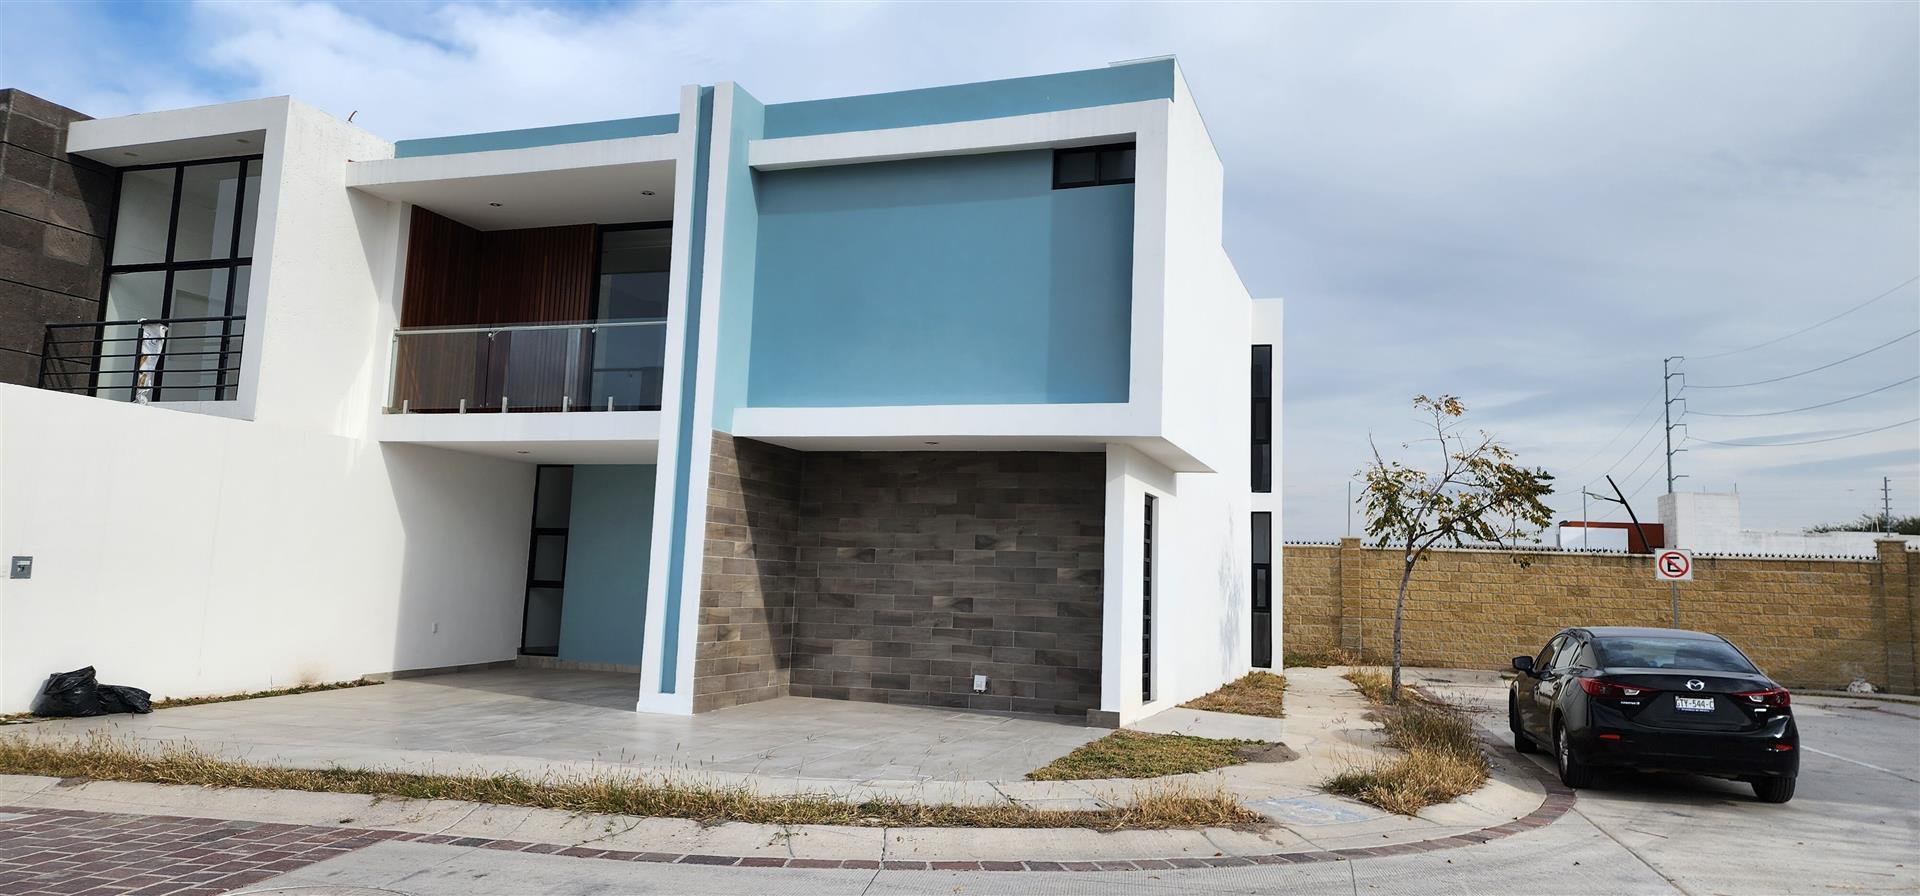 Moderna Casa En Venta En El Mayorazgo, León, Guanajuato